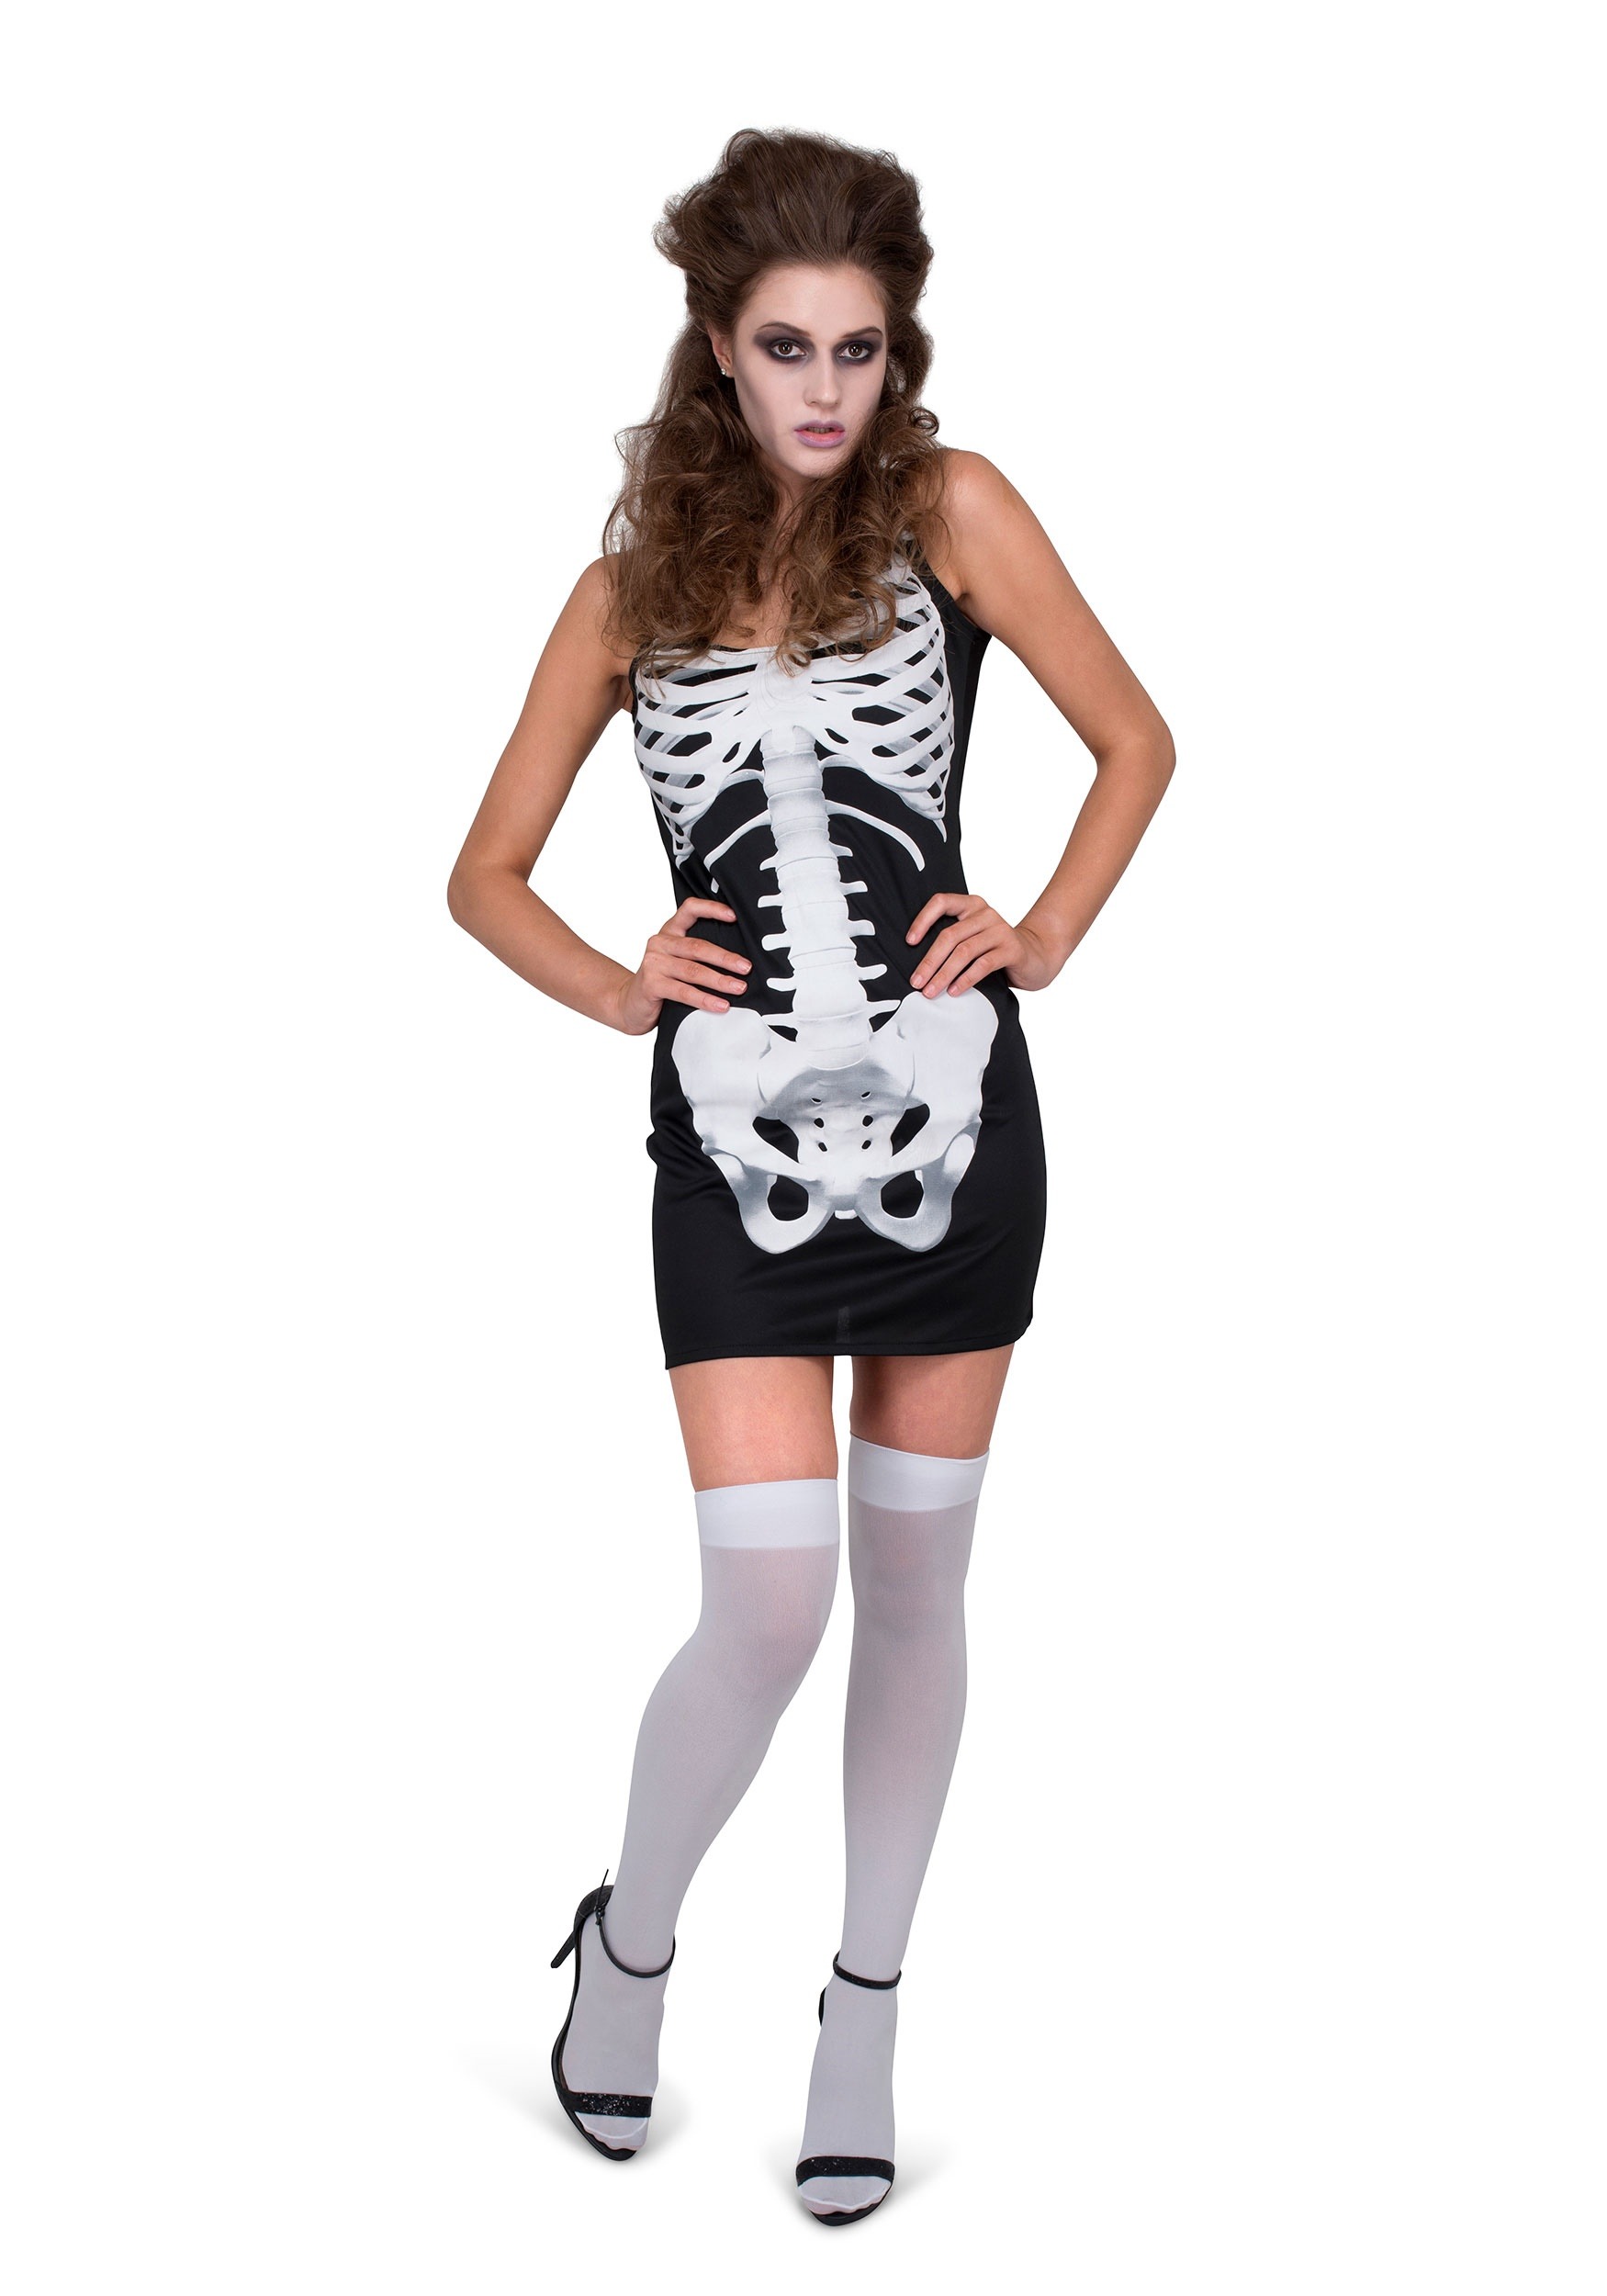 Women's Skeleton Dress Costume